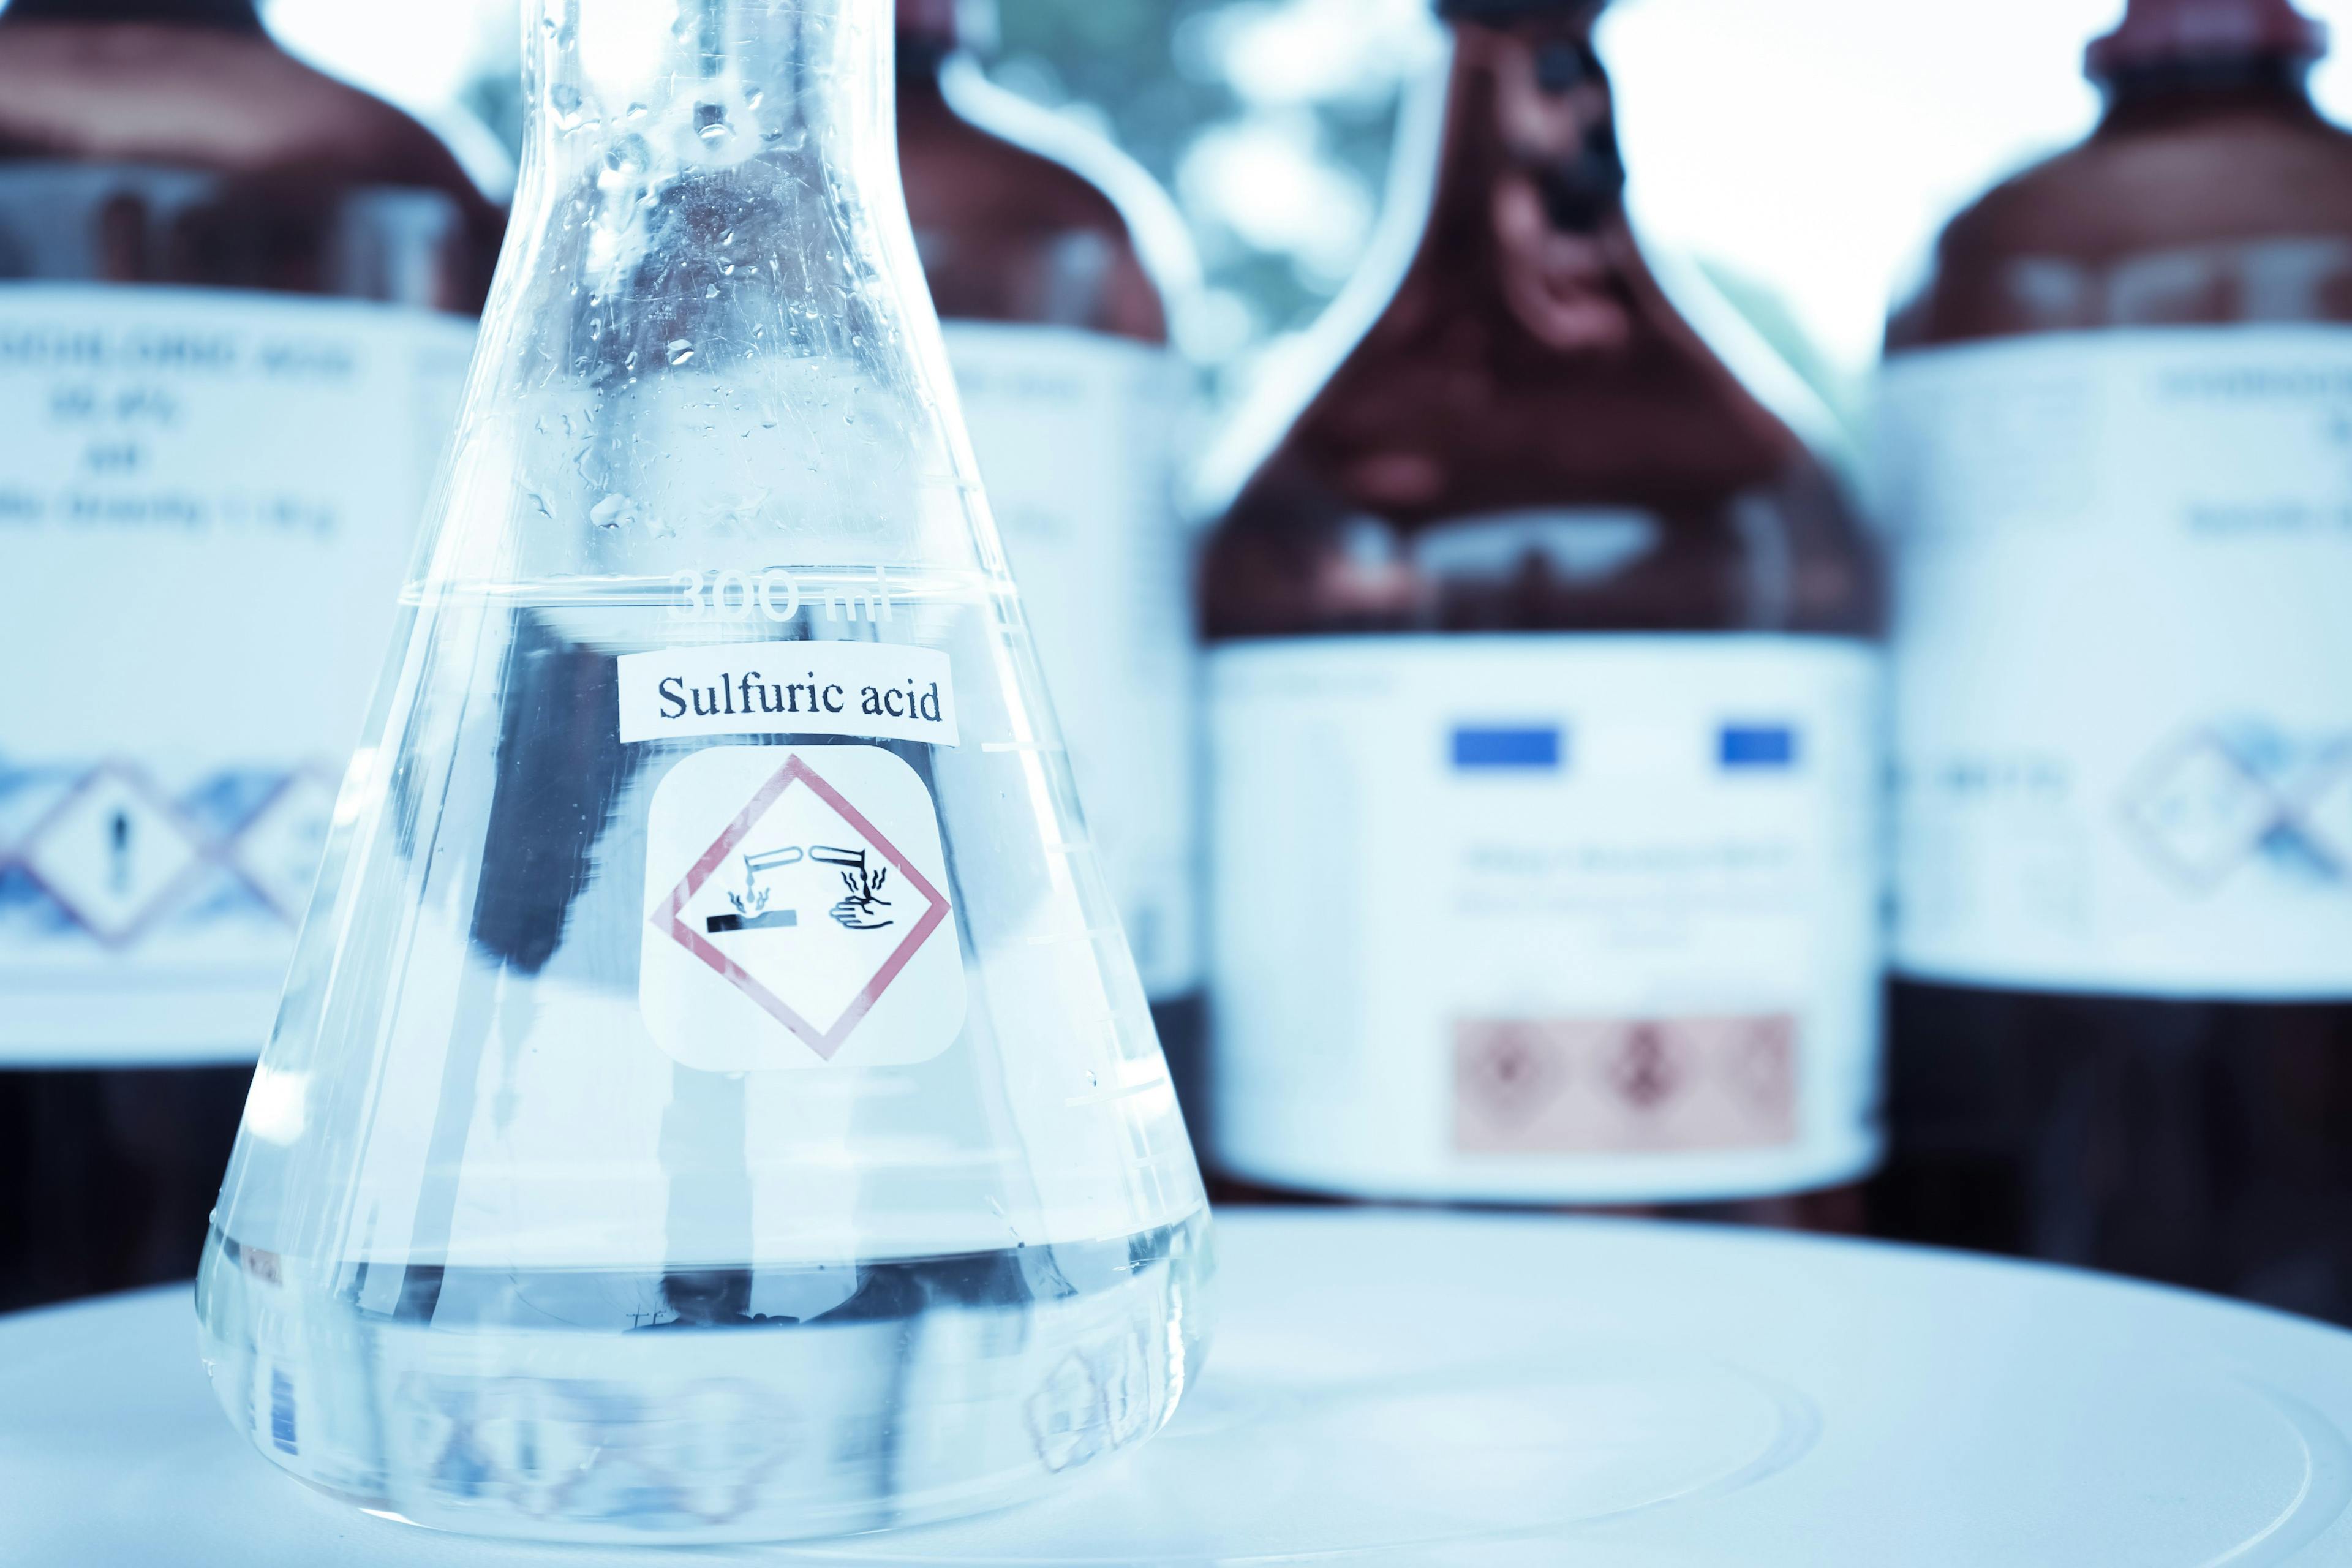 sulfuric acid in glass, chemical in the laboratory | Image Credit: © kittisak - stock.adobe.com